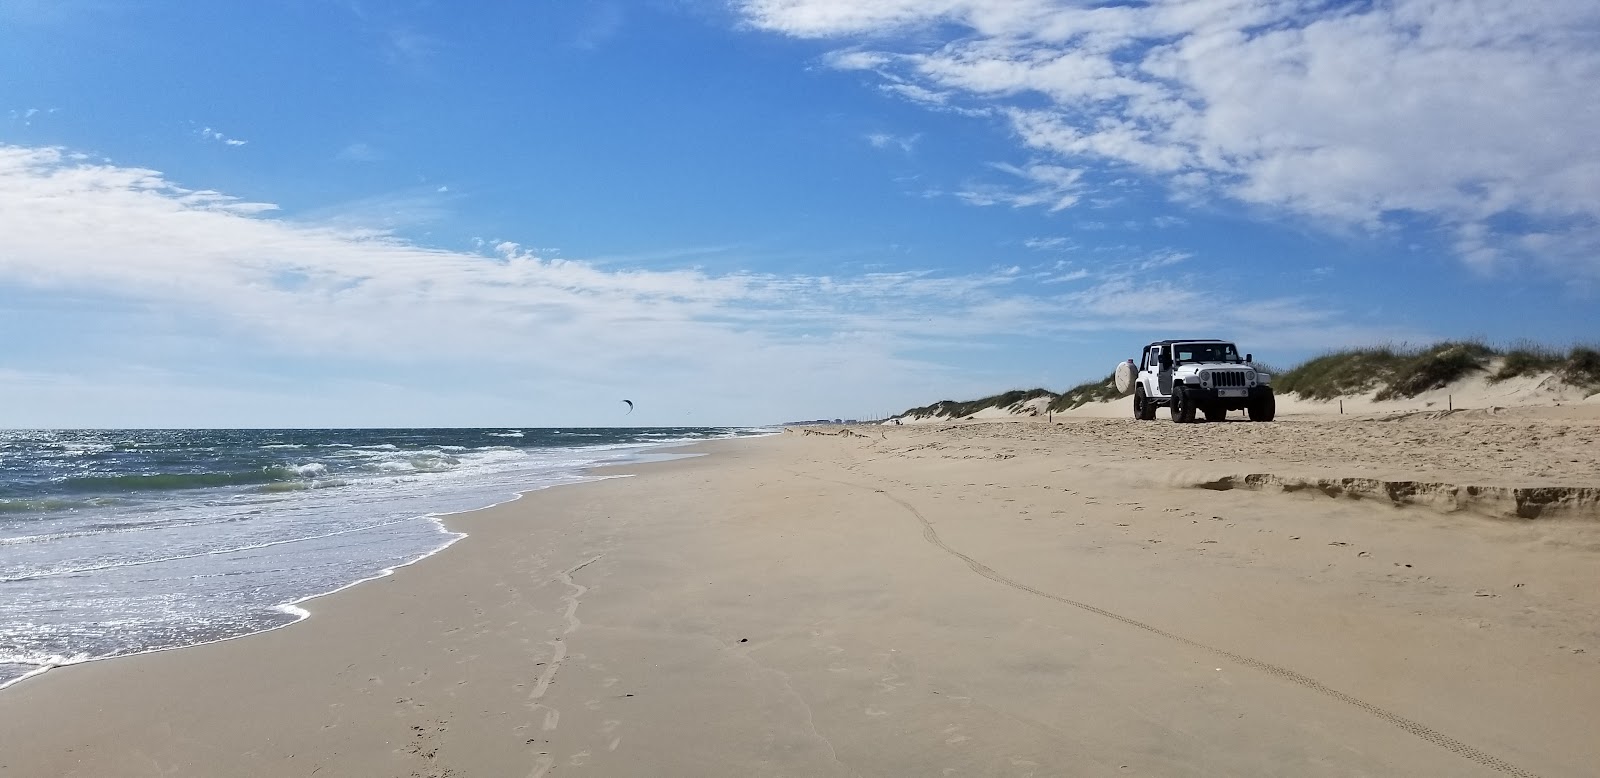 Zdjęcie Frisco beach II z powierzchnią jasny piasek